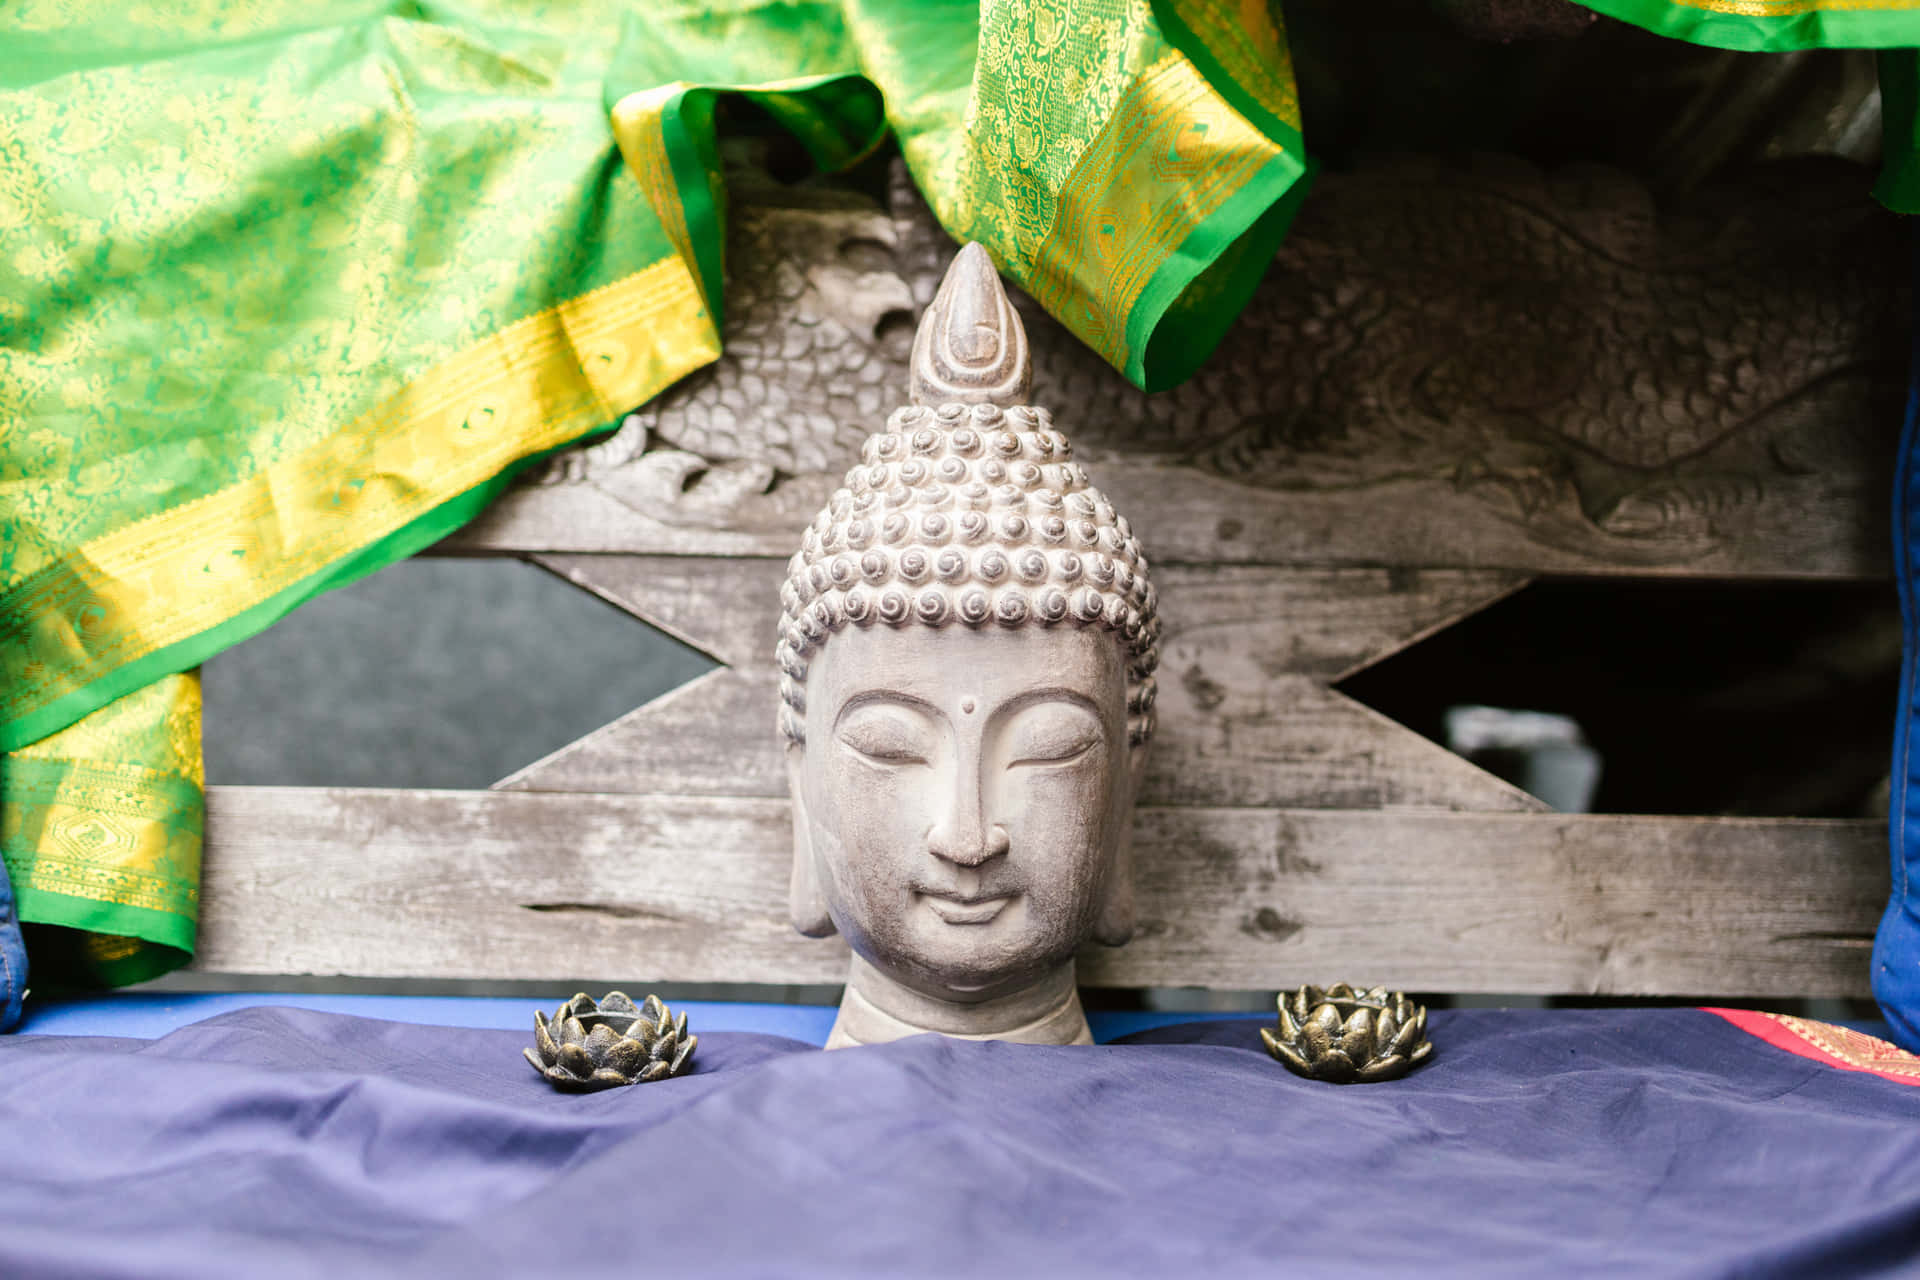 Buddhismsten Hovedbillede Tapet: Et smukt, fotorealistisk billede af en nikker, der opsamler kræfterne til meditation.